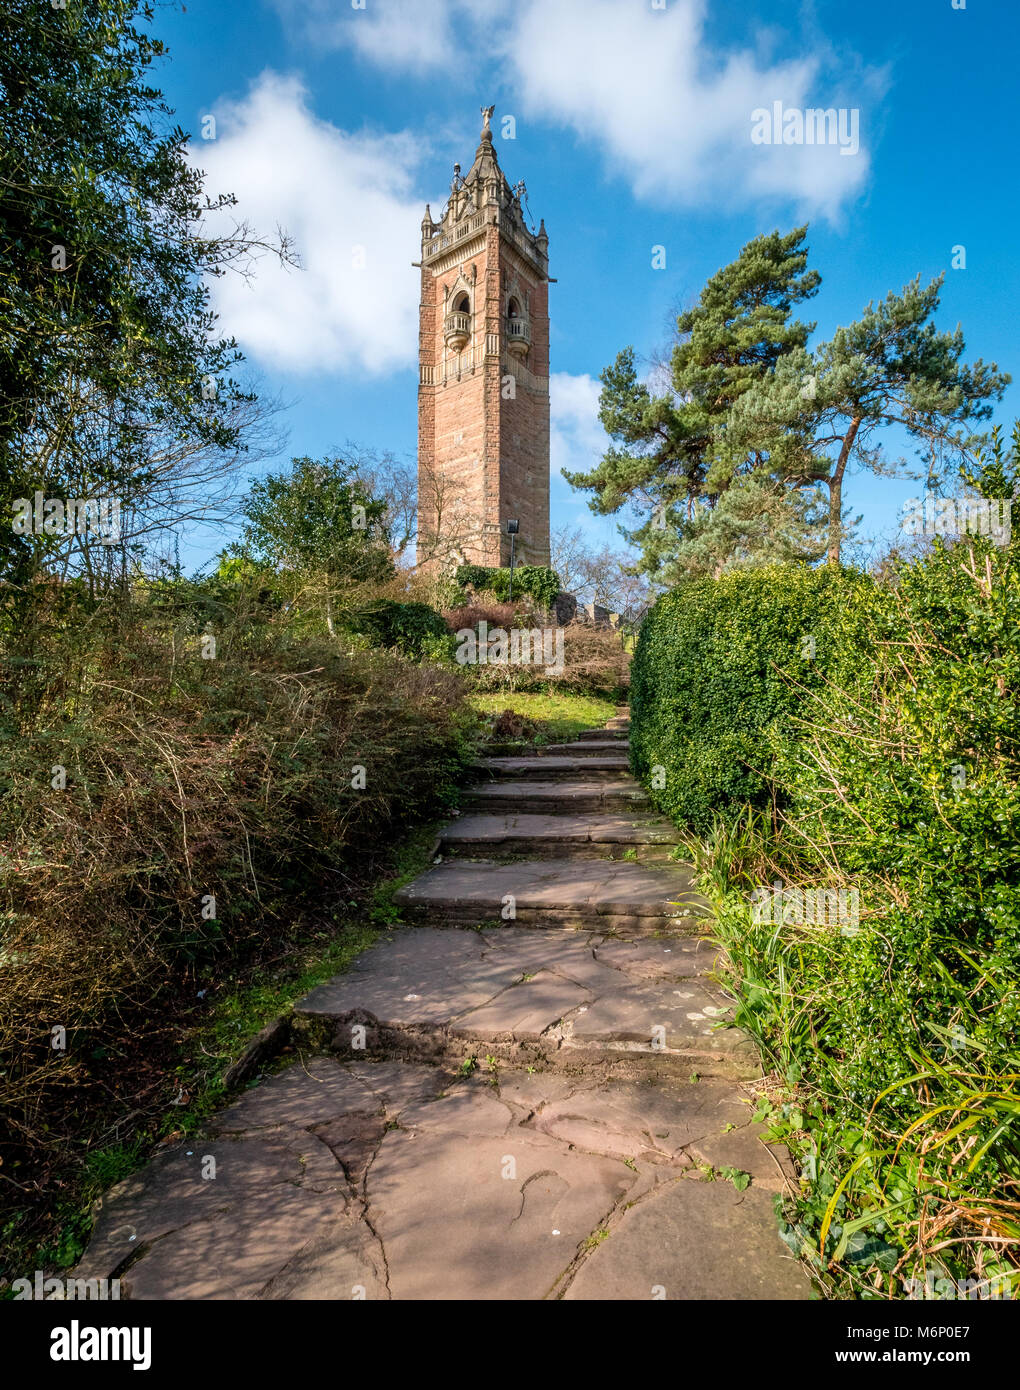 La tour Cabot, construite pour commémorer le 400e anniversaire de Cabots voyage en Amérique sur Brandon Hill le point le plus élevé de la ville de Bristol, Royaume-Uni Banque D'Images